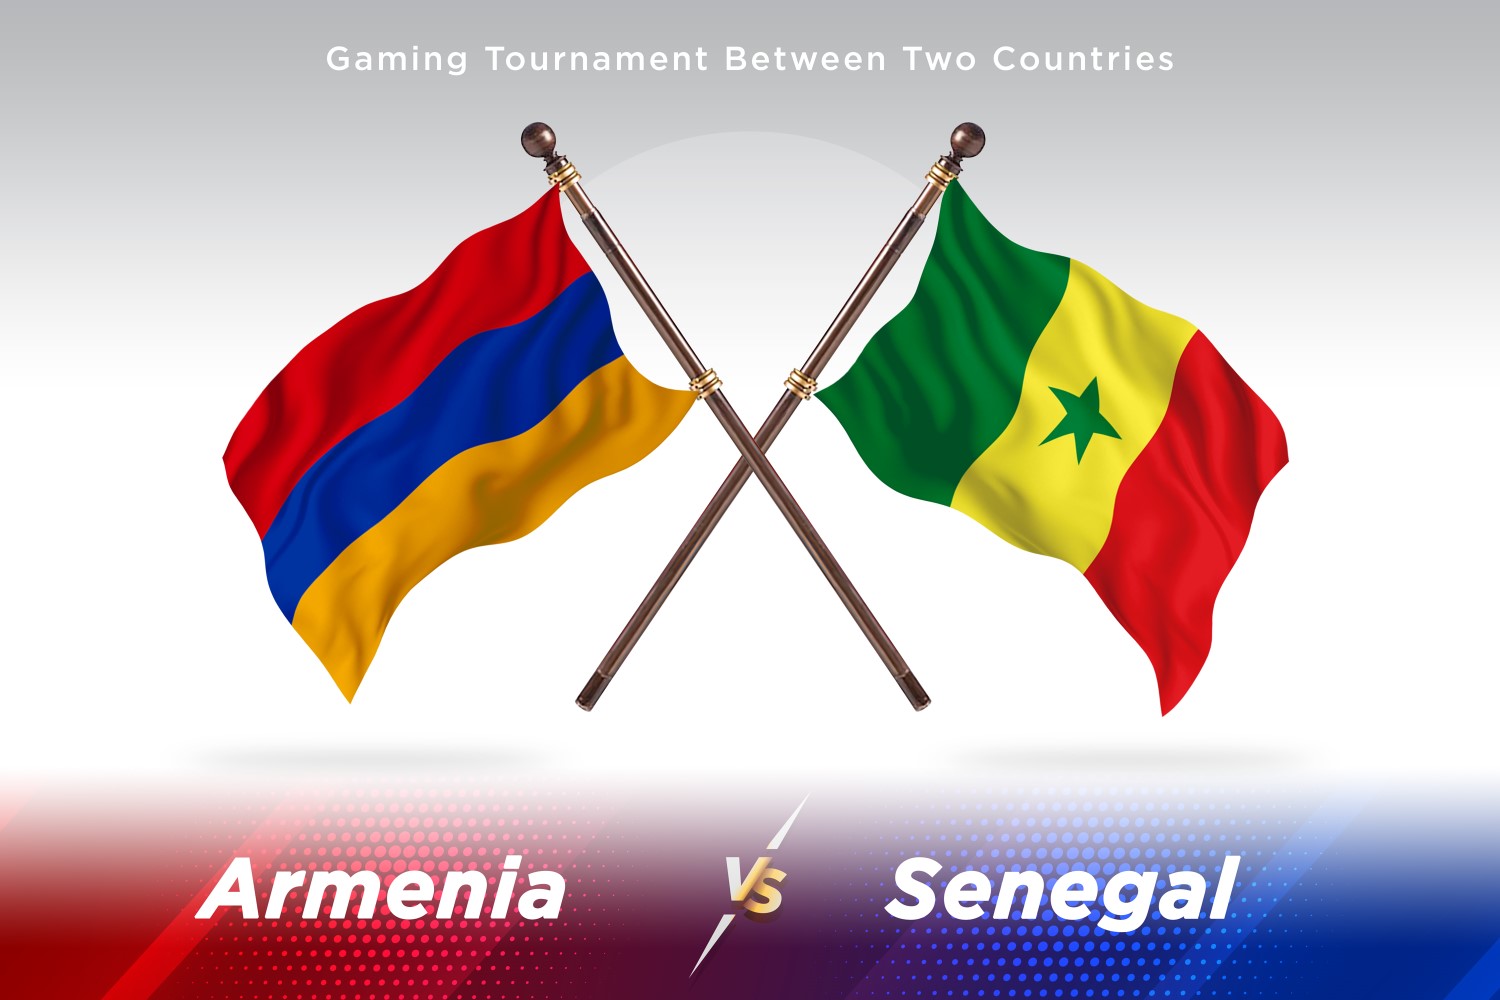 Armenia versus Senegal Two Flags